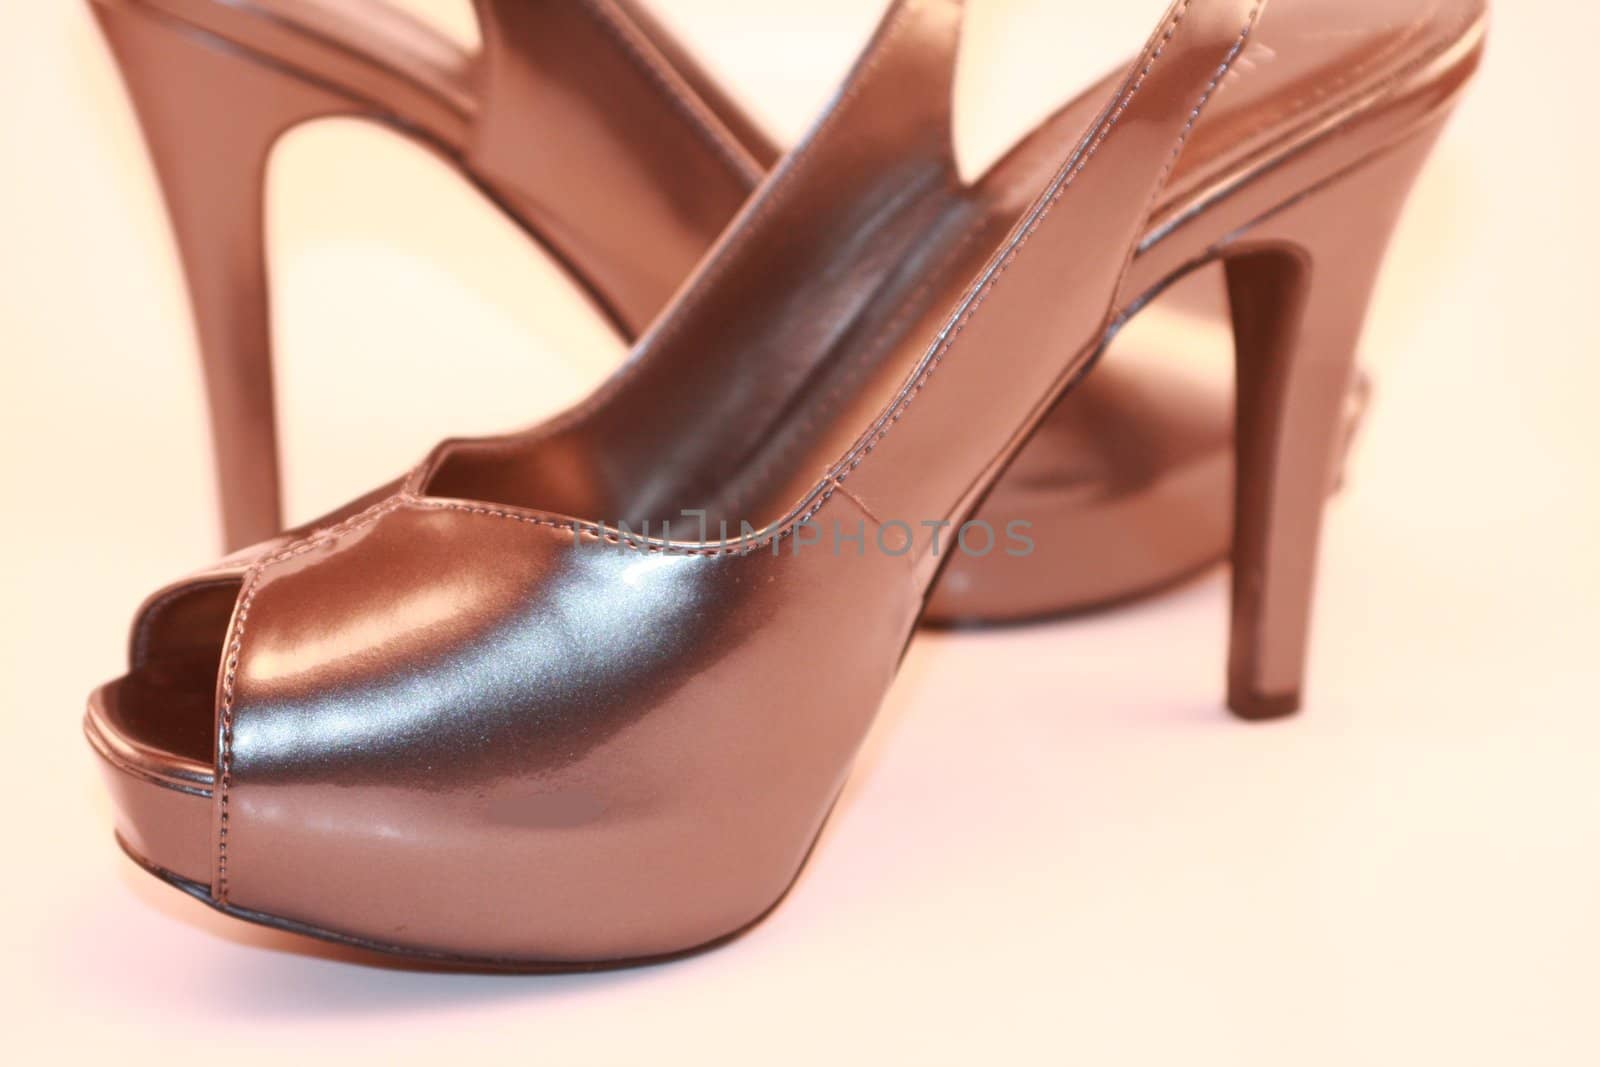 Women's High Heel Silver Shoes by knktucker